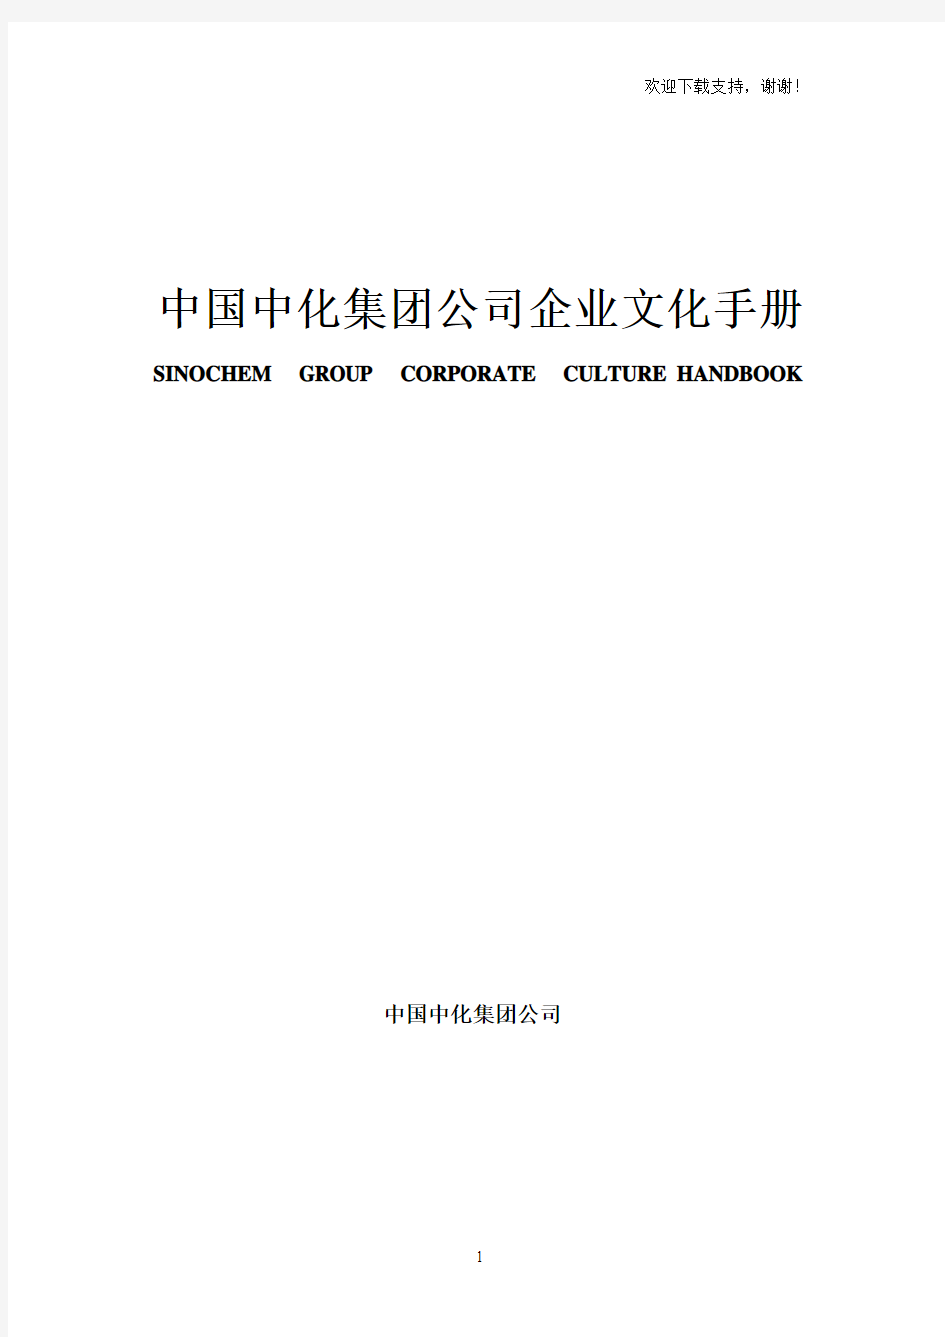 中化集团企业文化手册